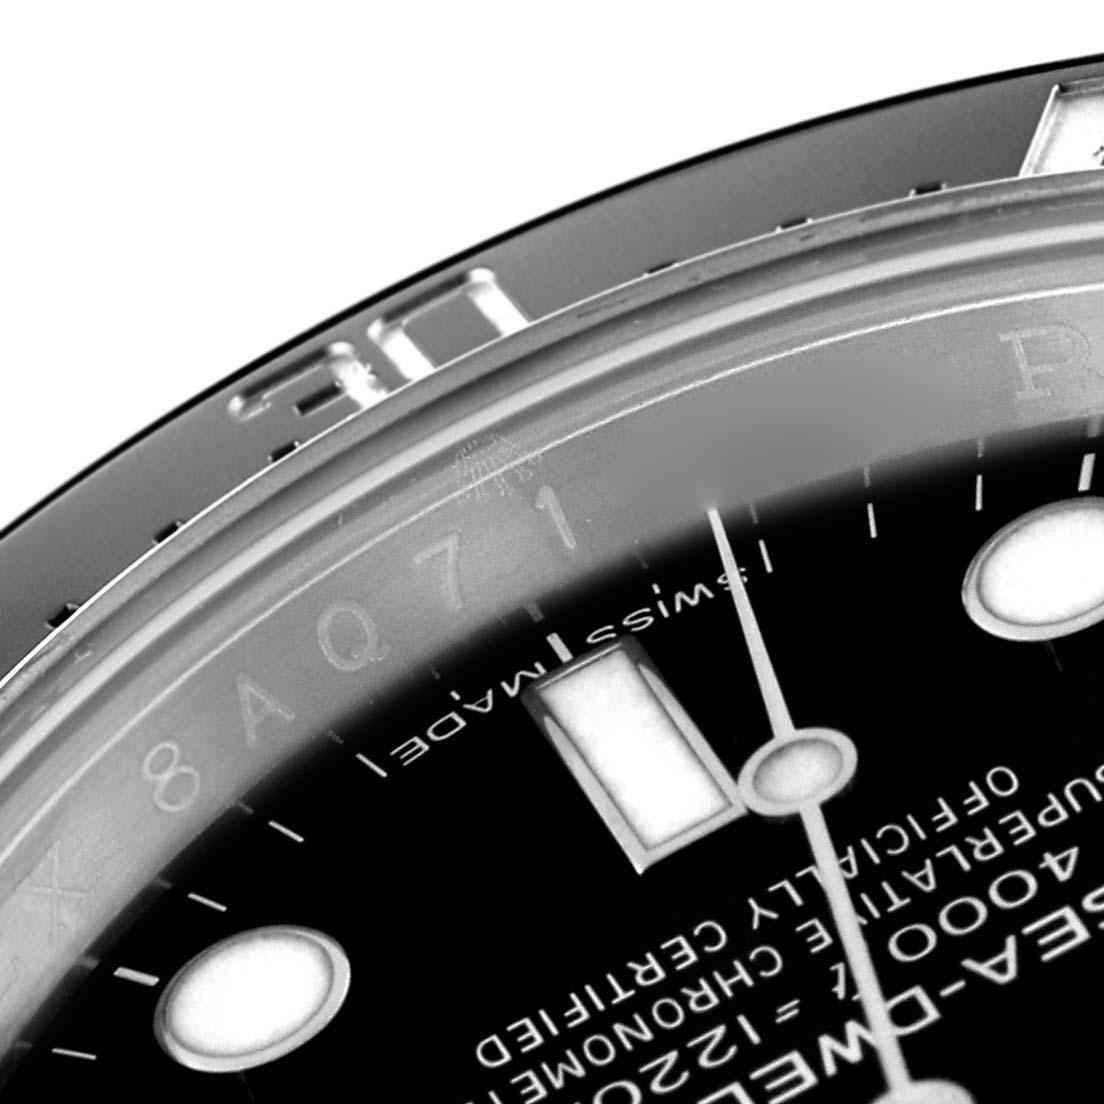 Rolex Seadweller 4000 Automatic Steel Mens Watch 116600. Mouvement automatique à remontage automatique, officiellement certifié chronomètre. Boîtier oyster en acier inoxydable de 40.0 mm de diamètre. Logo Rolex sur une couronne. Lunette tournante